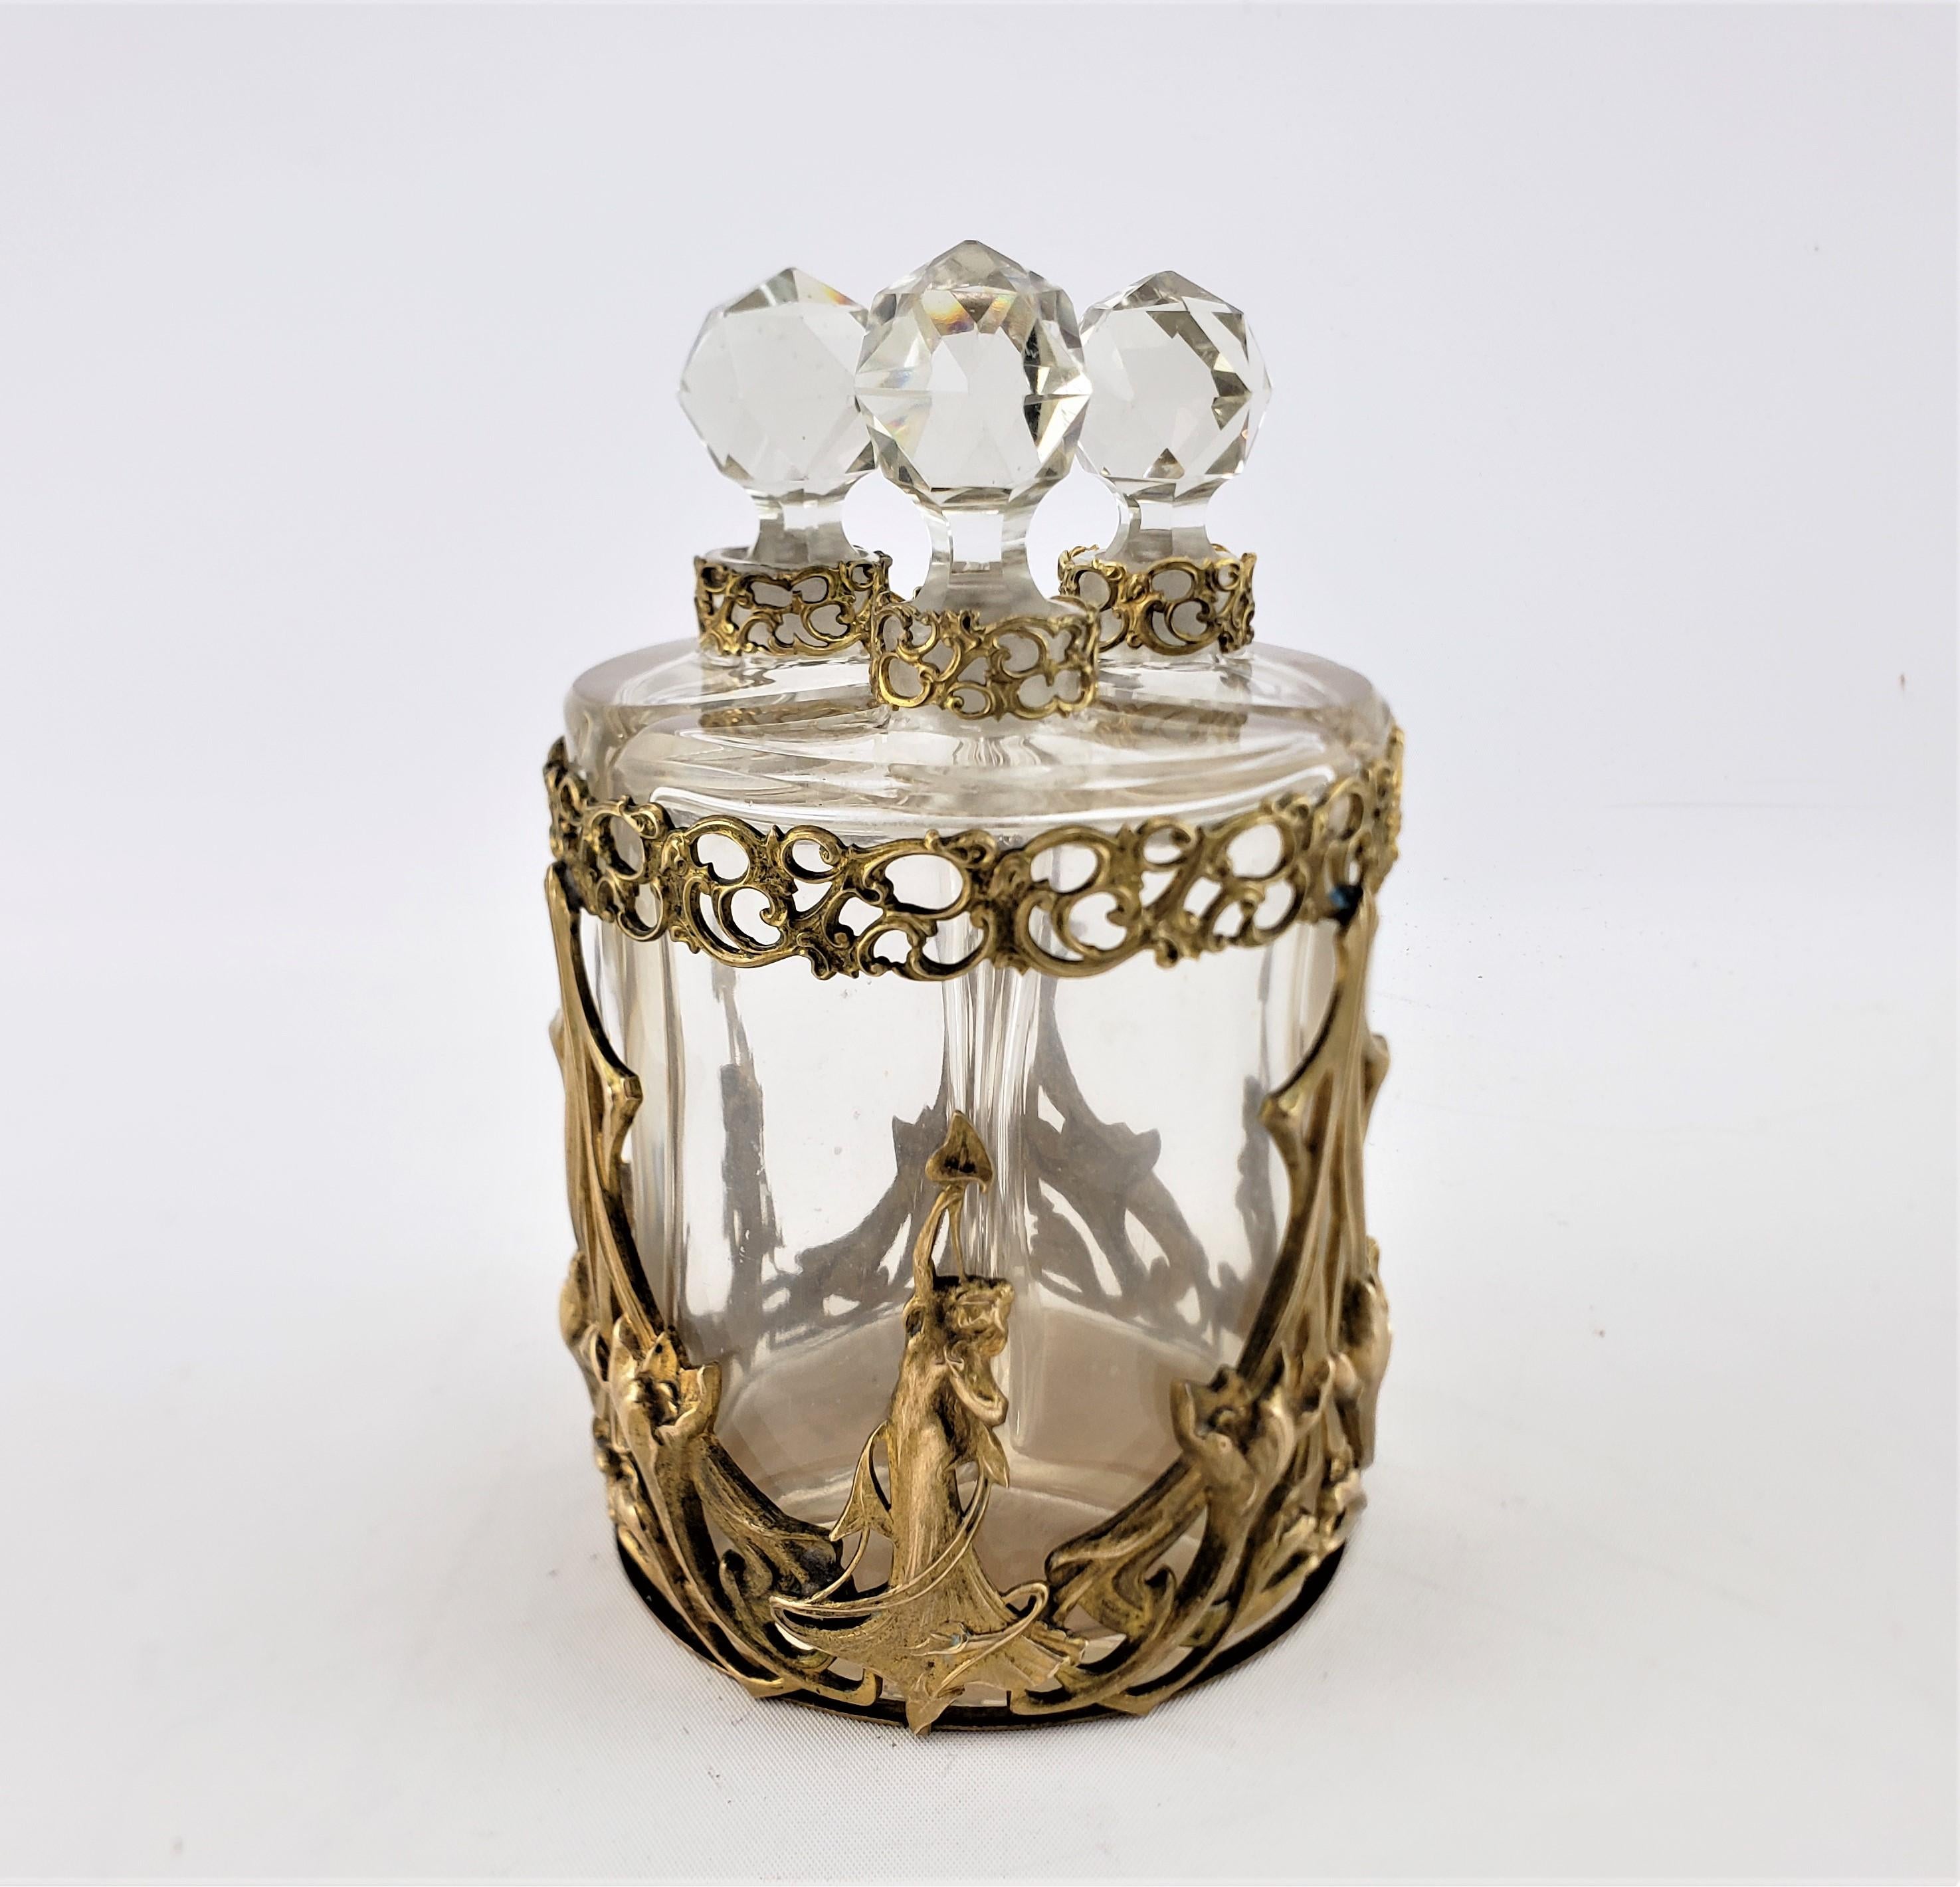 Dieses antike Parfümflaschenset ist unsigniert, stammt aber vermutlich aus Frankreich und wurde um 1900 im Jugendstil hergestellt. Das Set besteht aus einem gefundenen vergoldeten Bronzewagen oder -halter aus Guss und vergoldeter Bronze mit drei